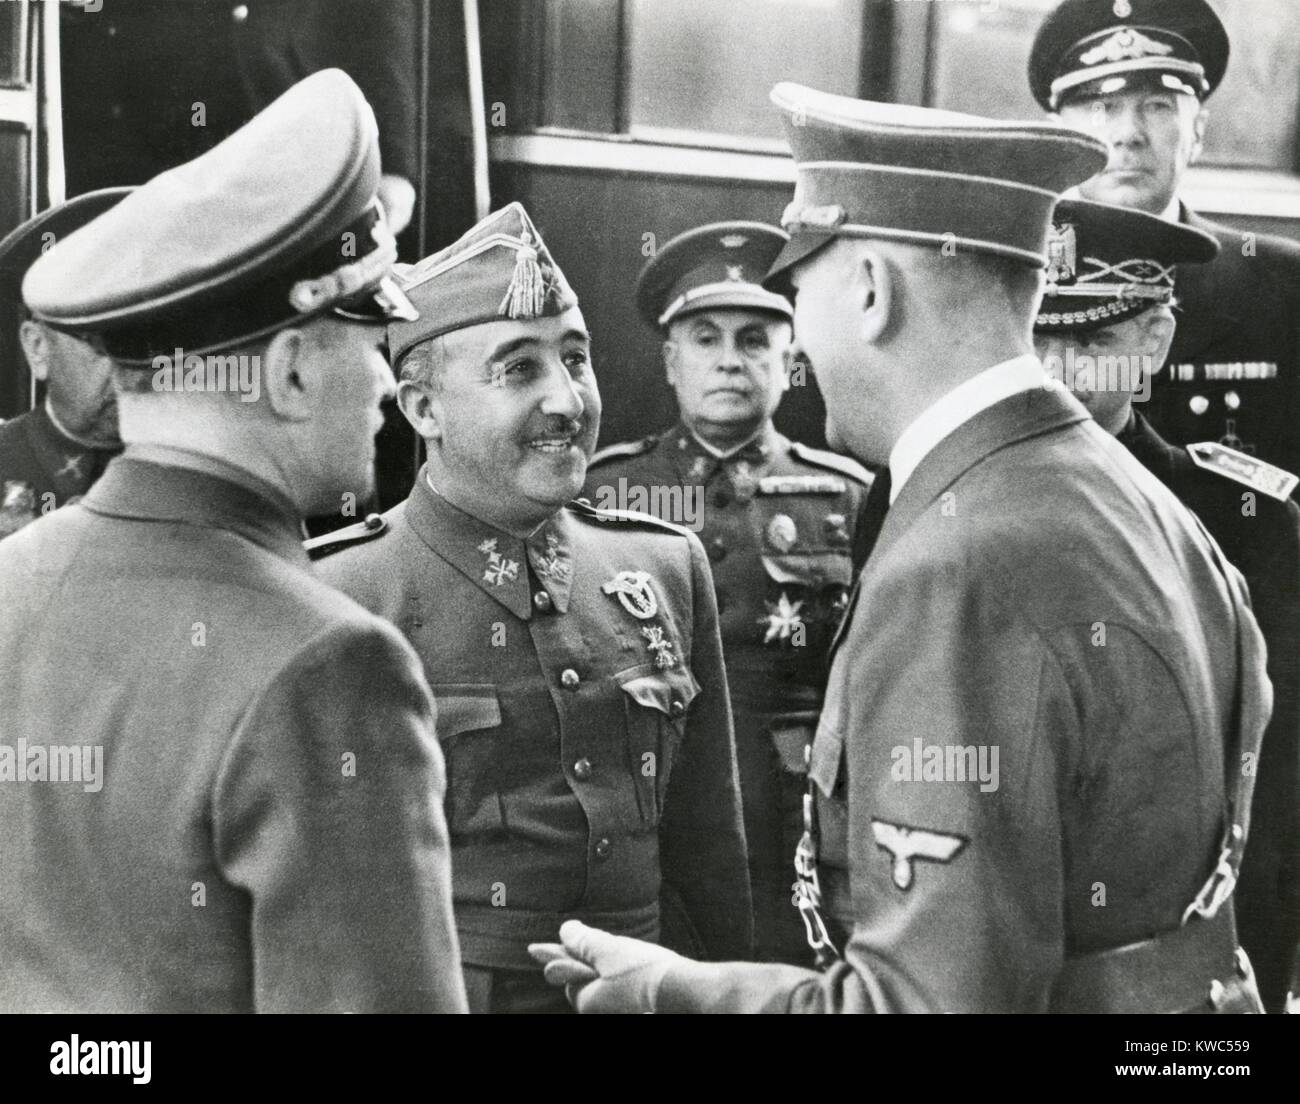 Dictateur fasciste espagnol Francisco Franco et Adolf Hitler se rencontrer pour la première fois, le 23 octobre 1940. Dans leurs 9 heures de conférence, Hitler a exhorté Franco le rejoindre dans la